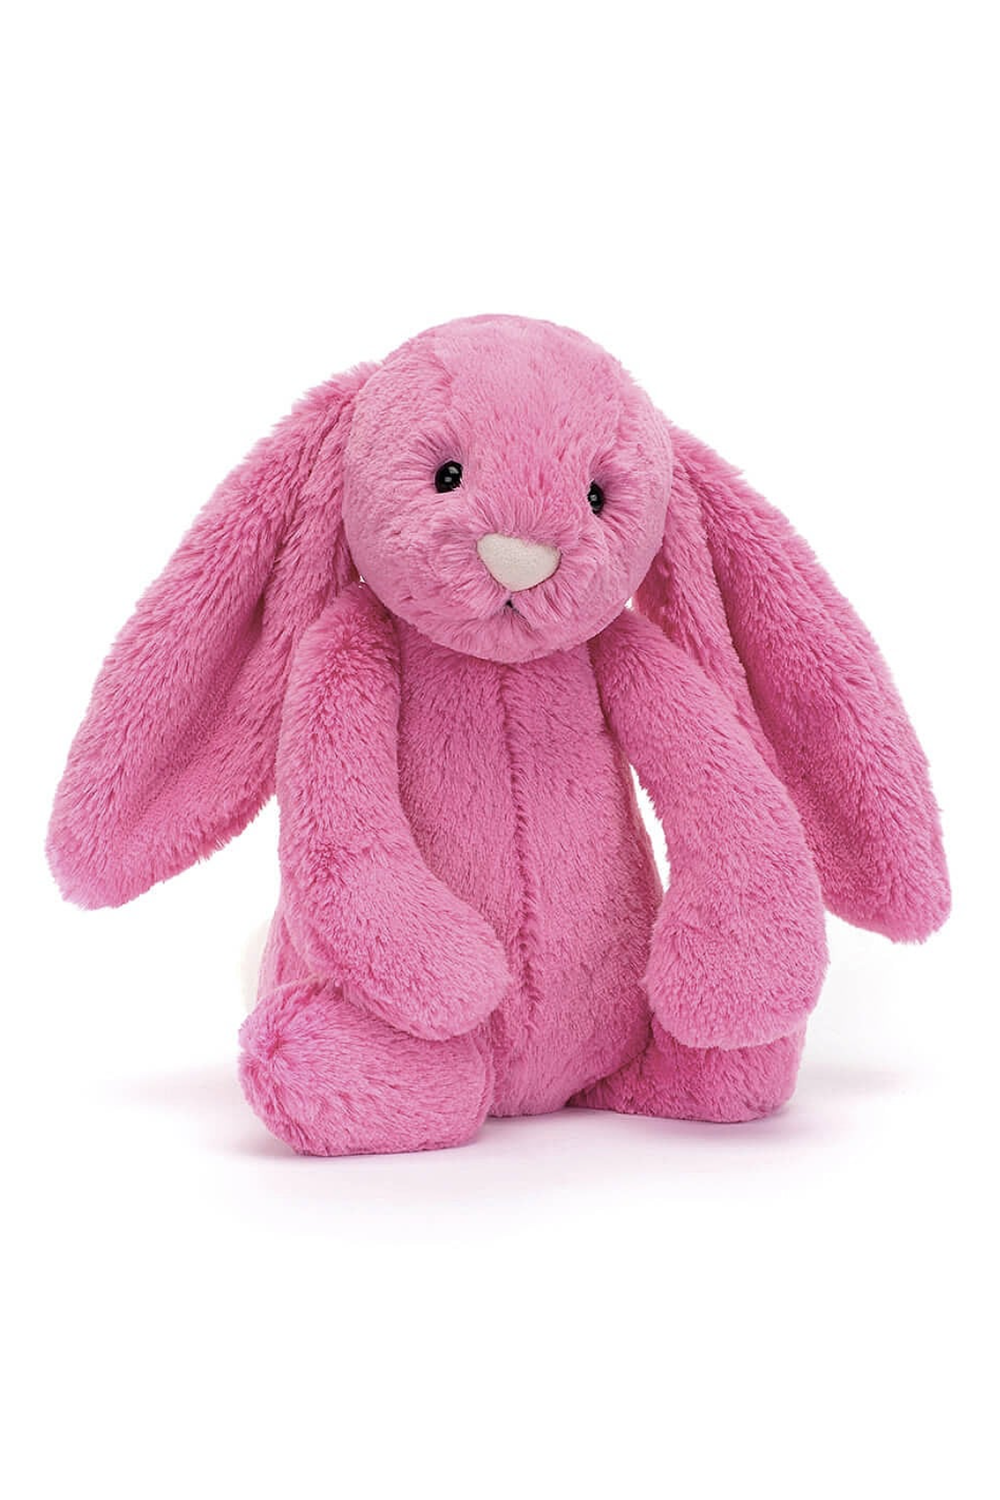 JELLYCAT Bashful Bunny - Hot Pink